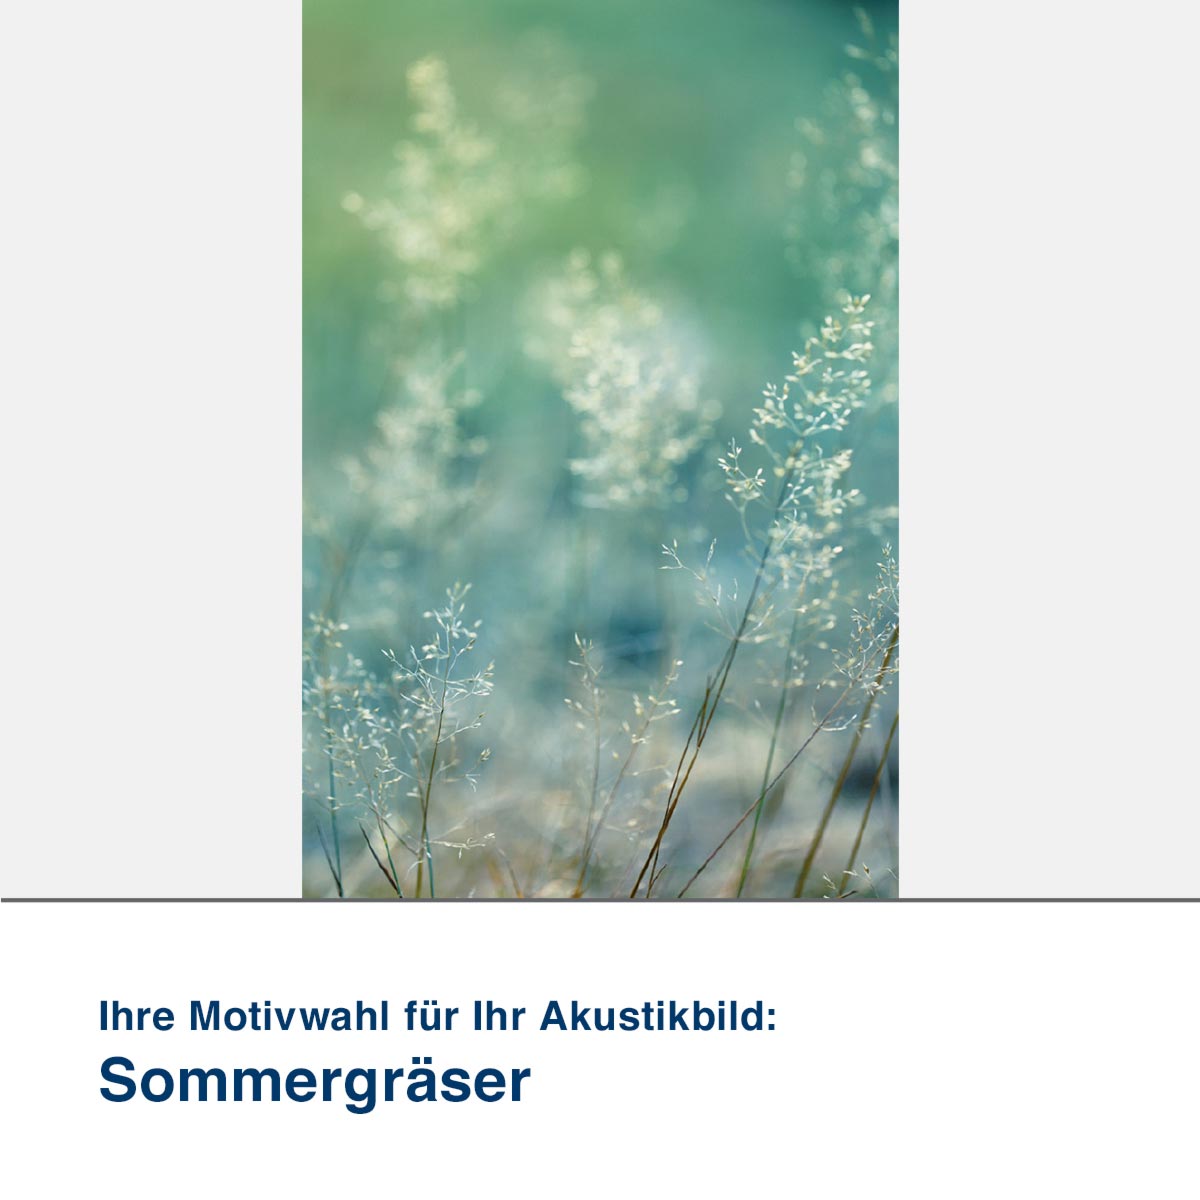 Akustikbild Motiv Sommergräser